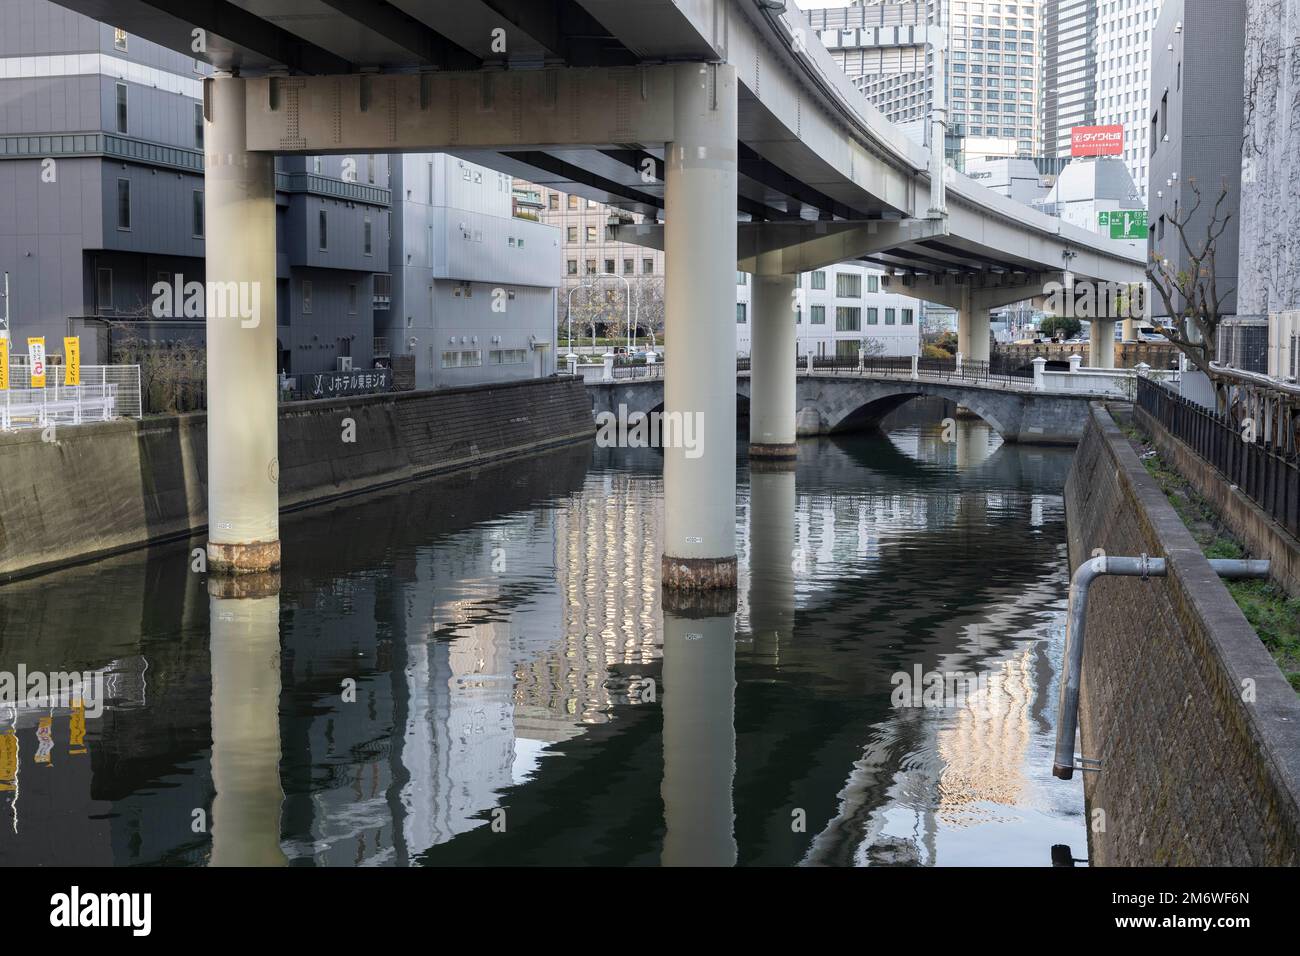 Tokio, Japan. 3. Januar 2023. Eine Autobahnüberführung über dem Kanda River in Tokio. Die Stadt ist berühmt für ihre Autobahnen, die über Flüsse gebaut wurden, und hat begonnen, städtische Autobahnen abzubauen, um Grünwege entlang der zahlreichen Flüsse und Kanäle der Stadt zu schaffen. Marunouchi ist ein wichtiges zentrales Geschäftsviertel in der Nähe des Kaiserpalastes und des Bahnhofs von Tokio. Es ist eines der wichtigsten Zentren der japanischen Wirtschaft und Wirtschaft. (Kreditbild: © Taidgh Barron/ZUMA Press Wire) Stockfoto